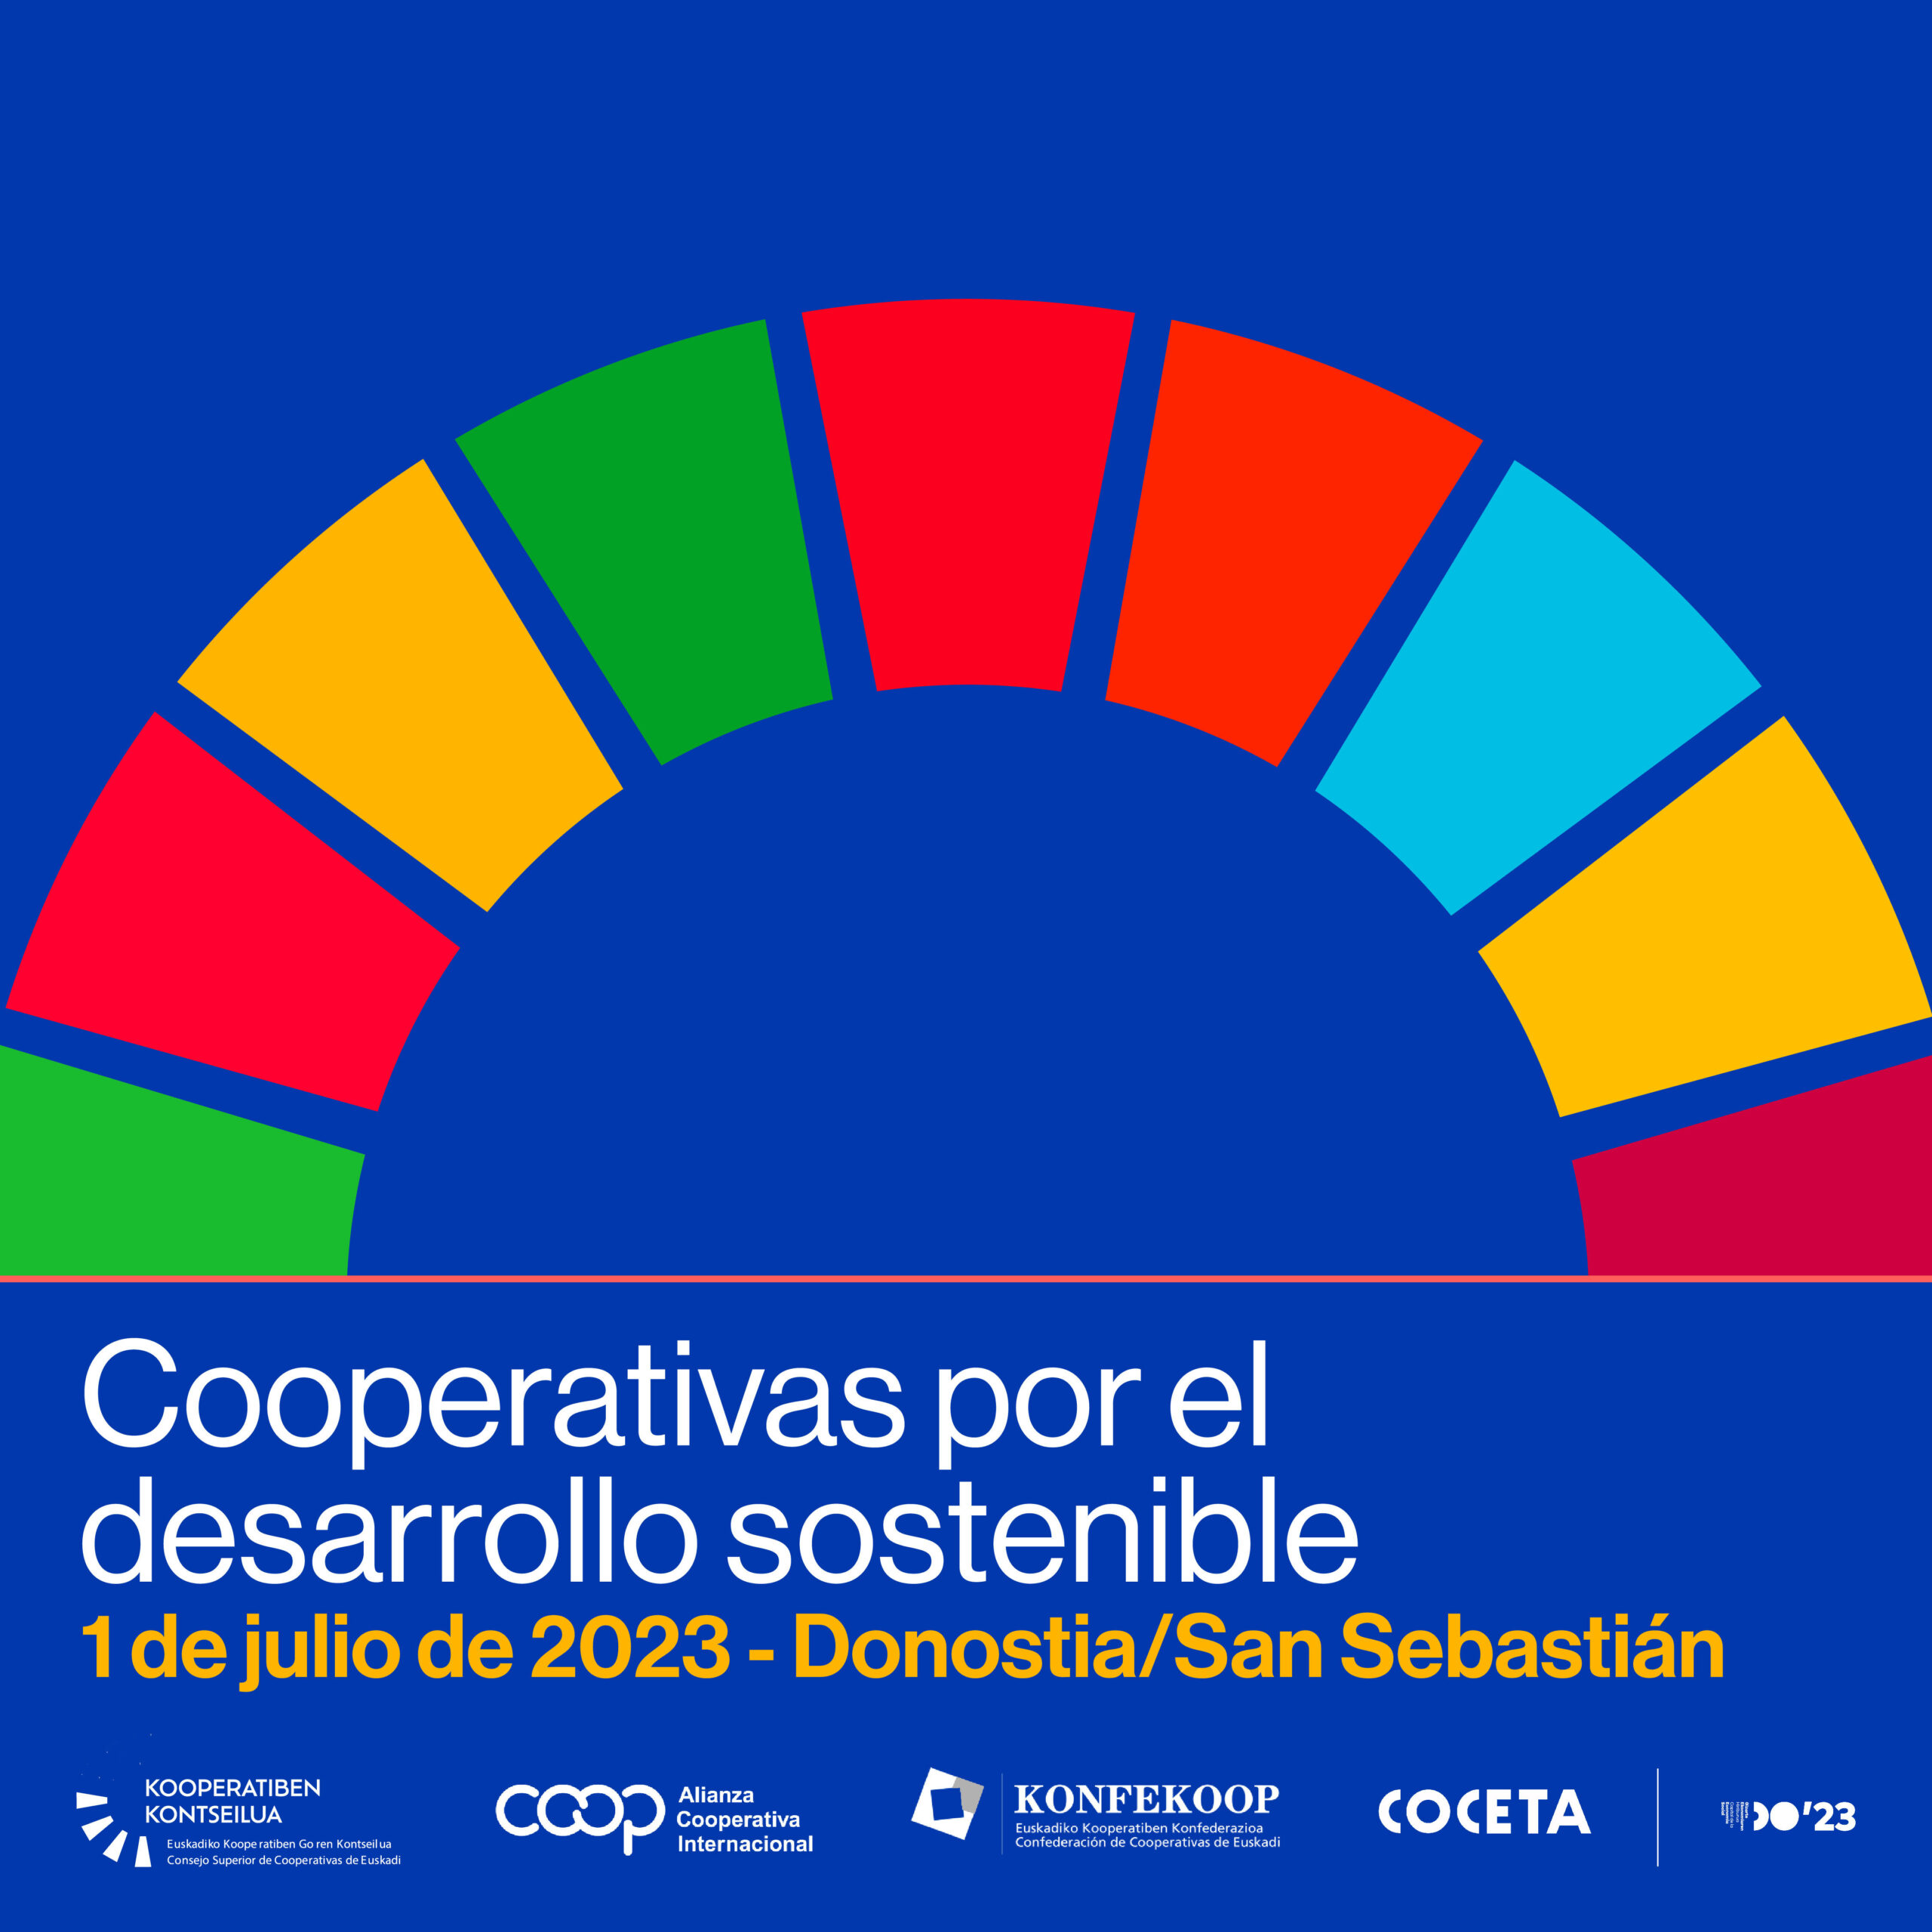 El cooperativismo vasco celebra el Día Internacional de las Cooperativas con un evento global retransmitido desde Donostia